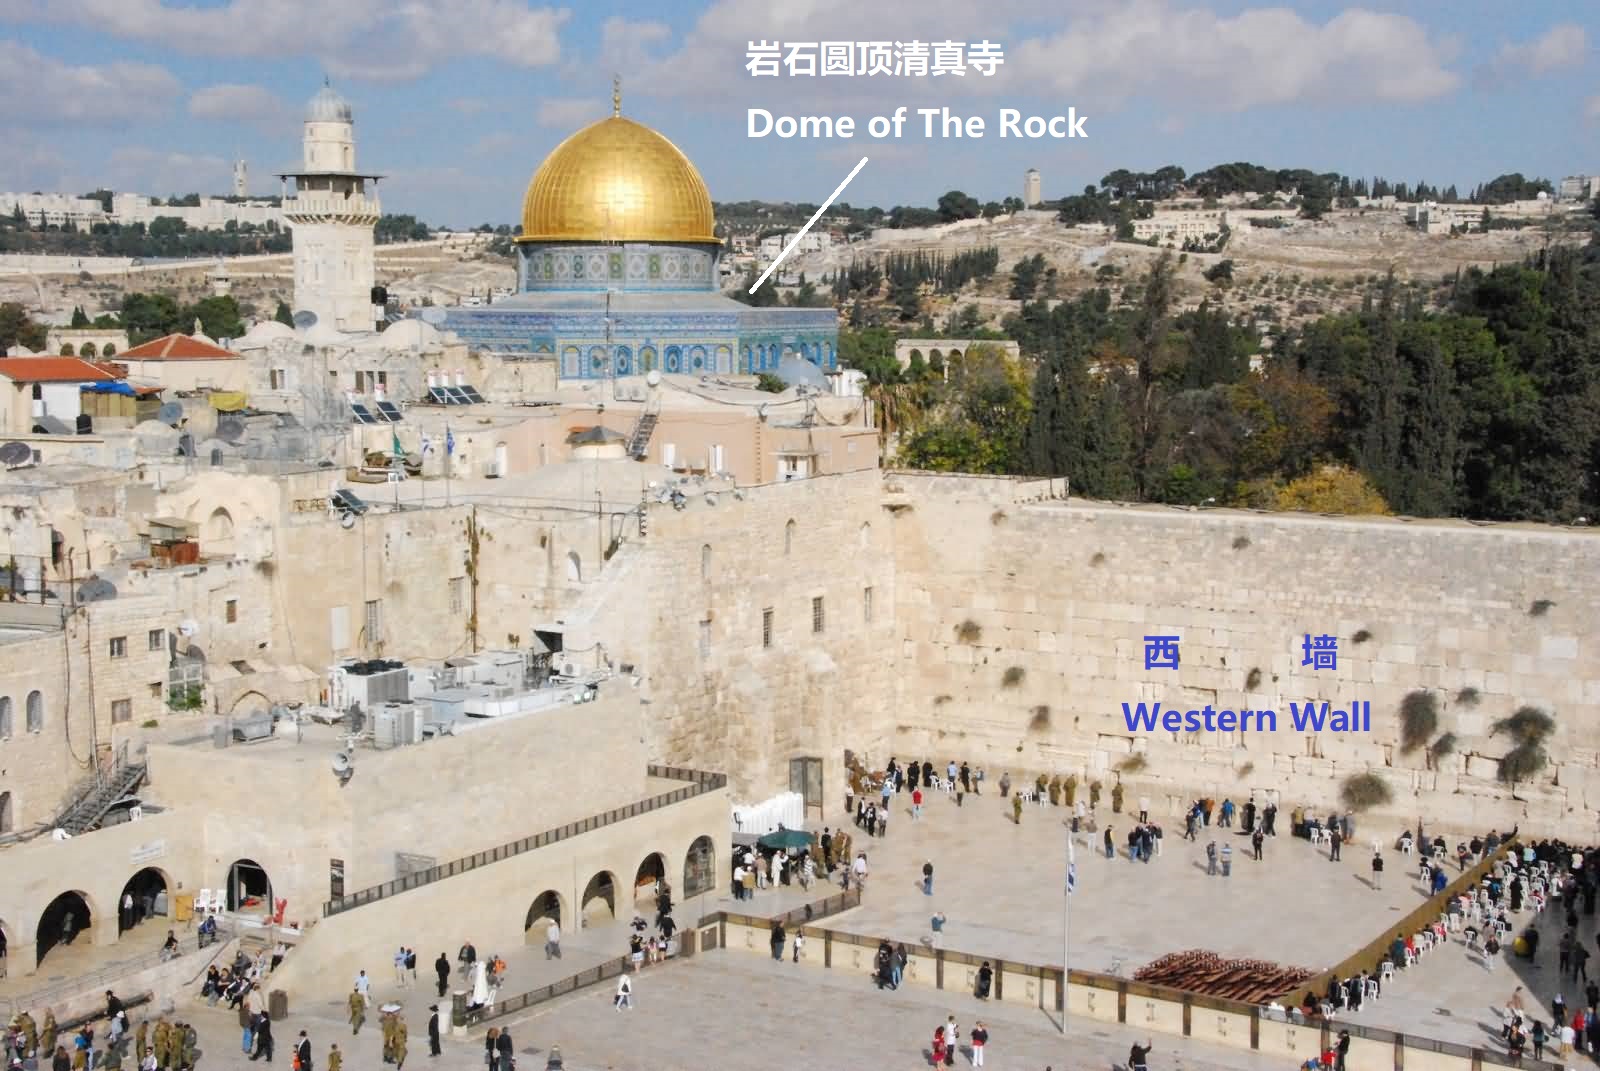 金顶下面的岩石,很可能就是所罗门圣殿中至圣所的位置